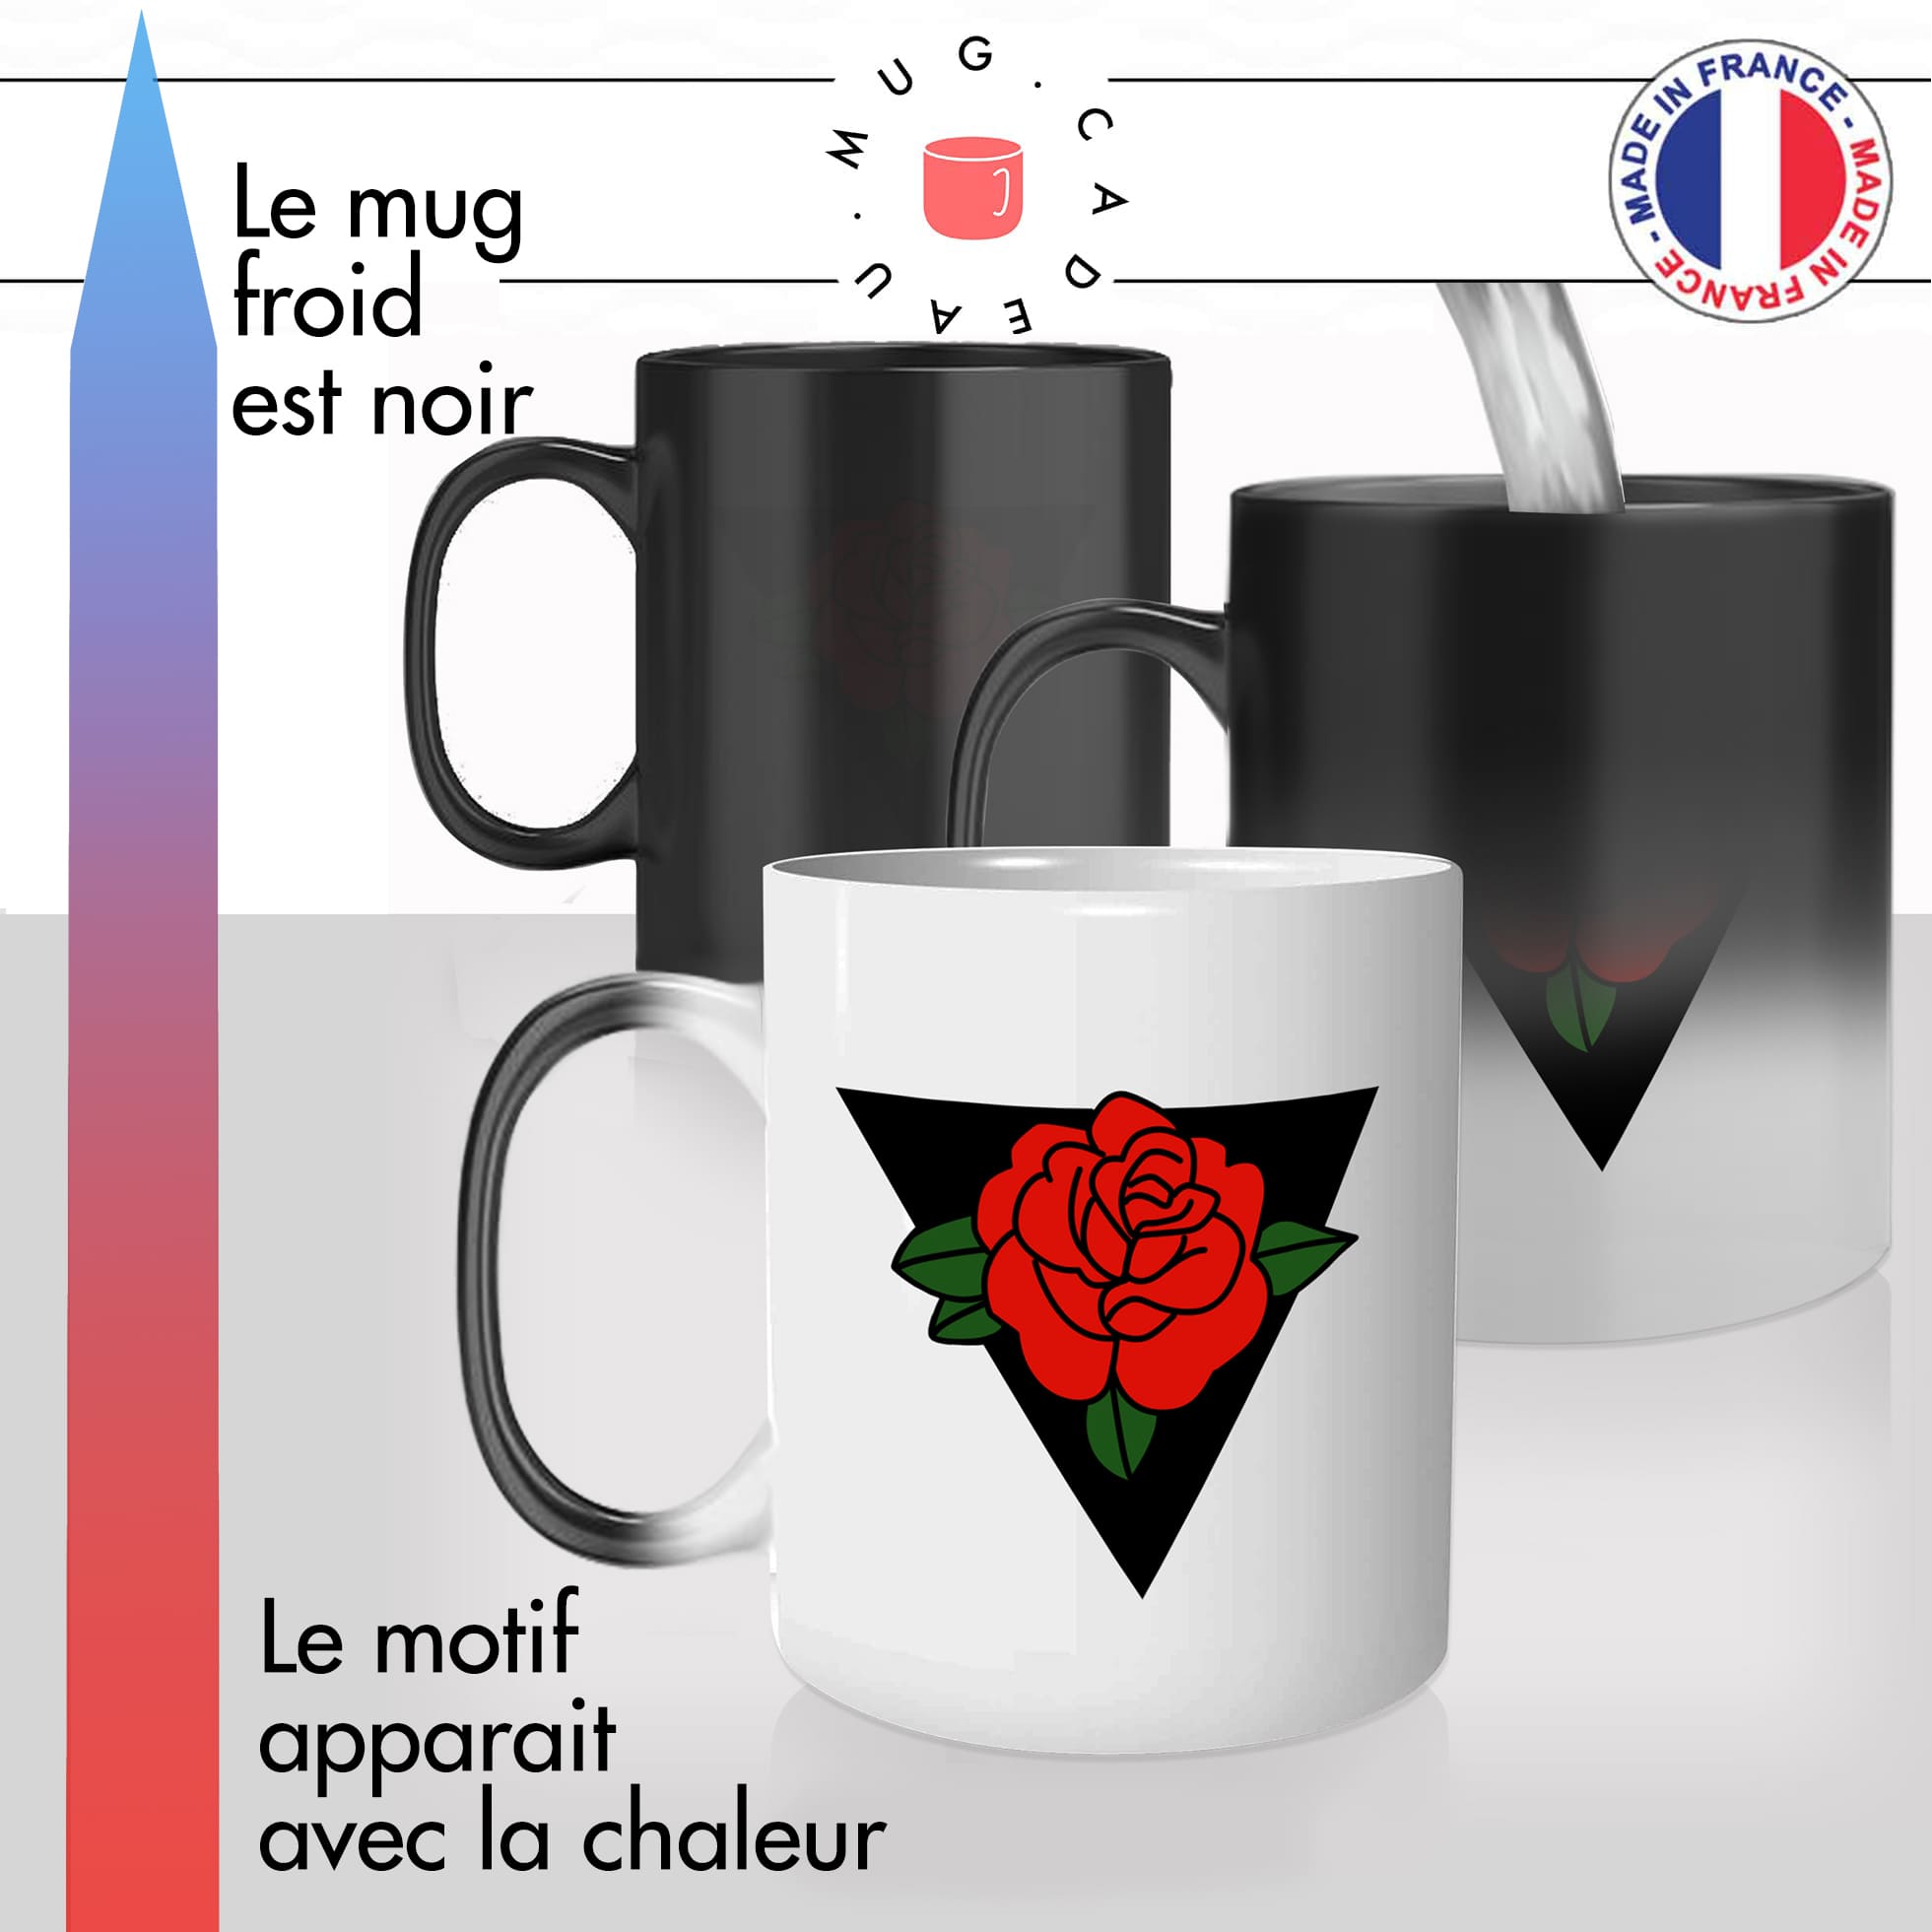 mug magique thermoréactif thermo chauffant personnalisé dessin rose rouge triangle noir art personnalisable idée cadeau fun original